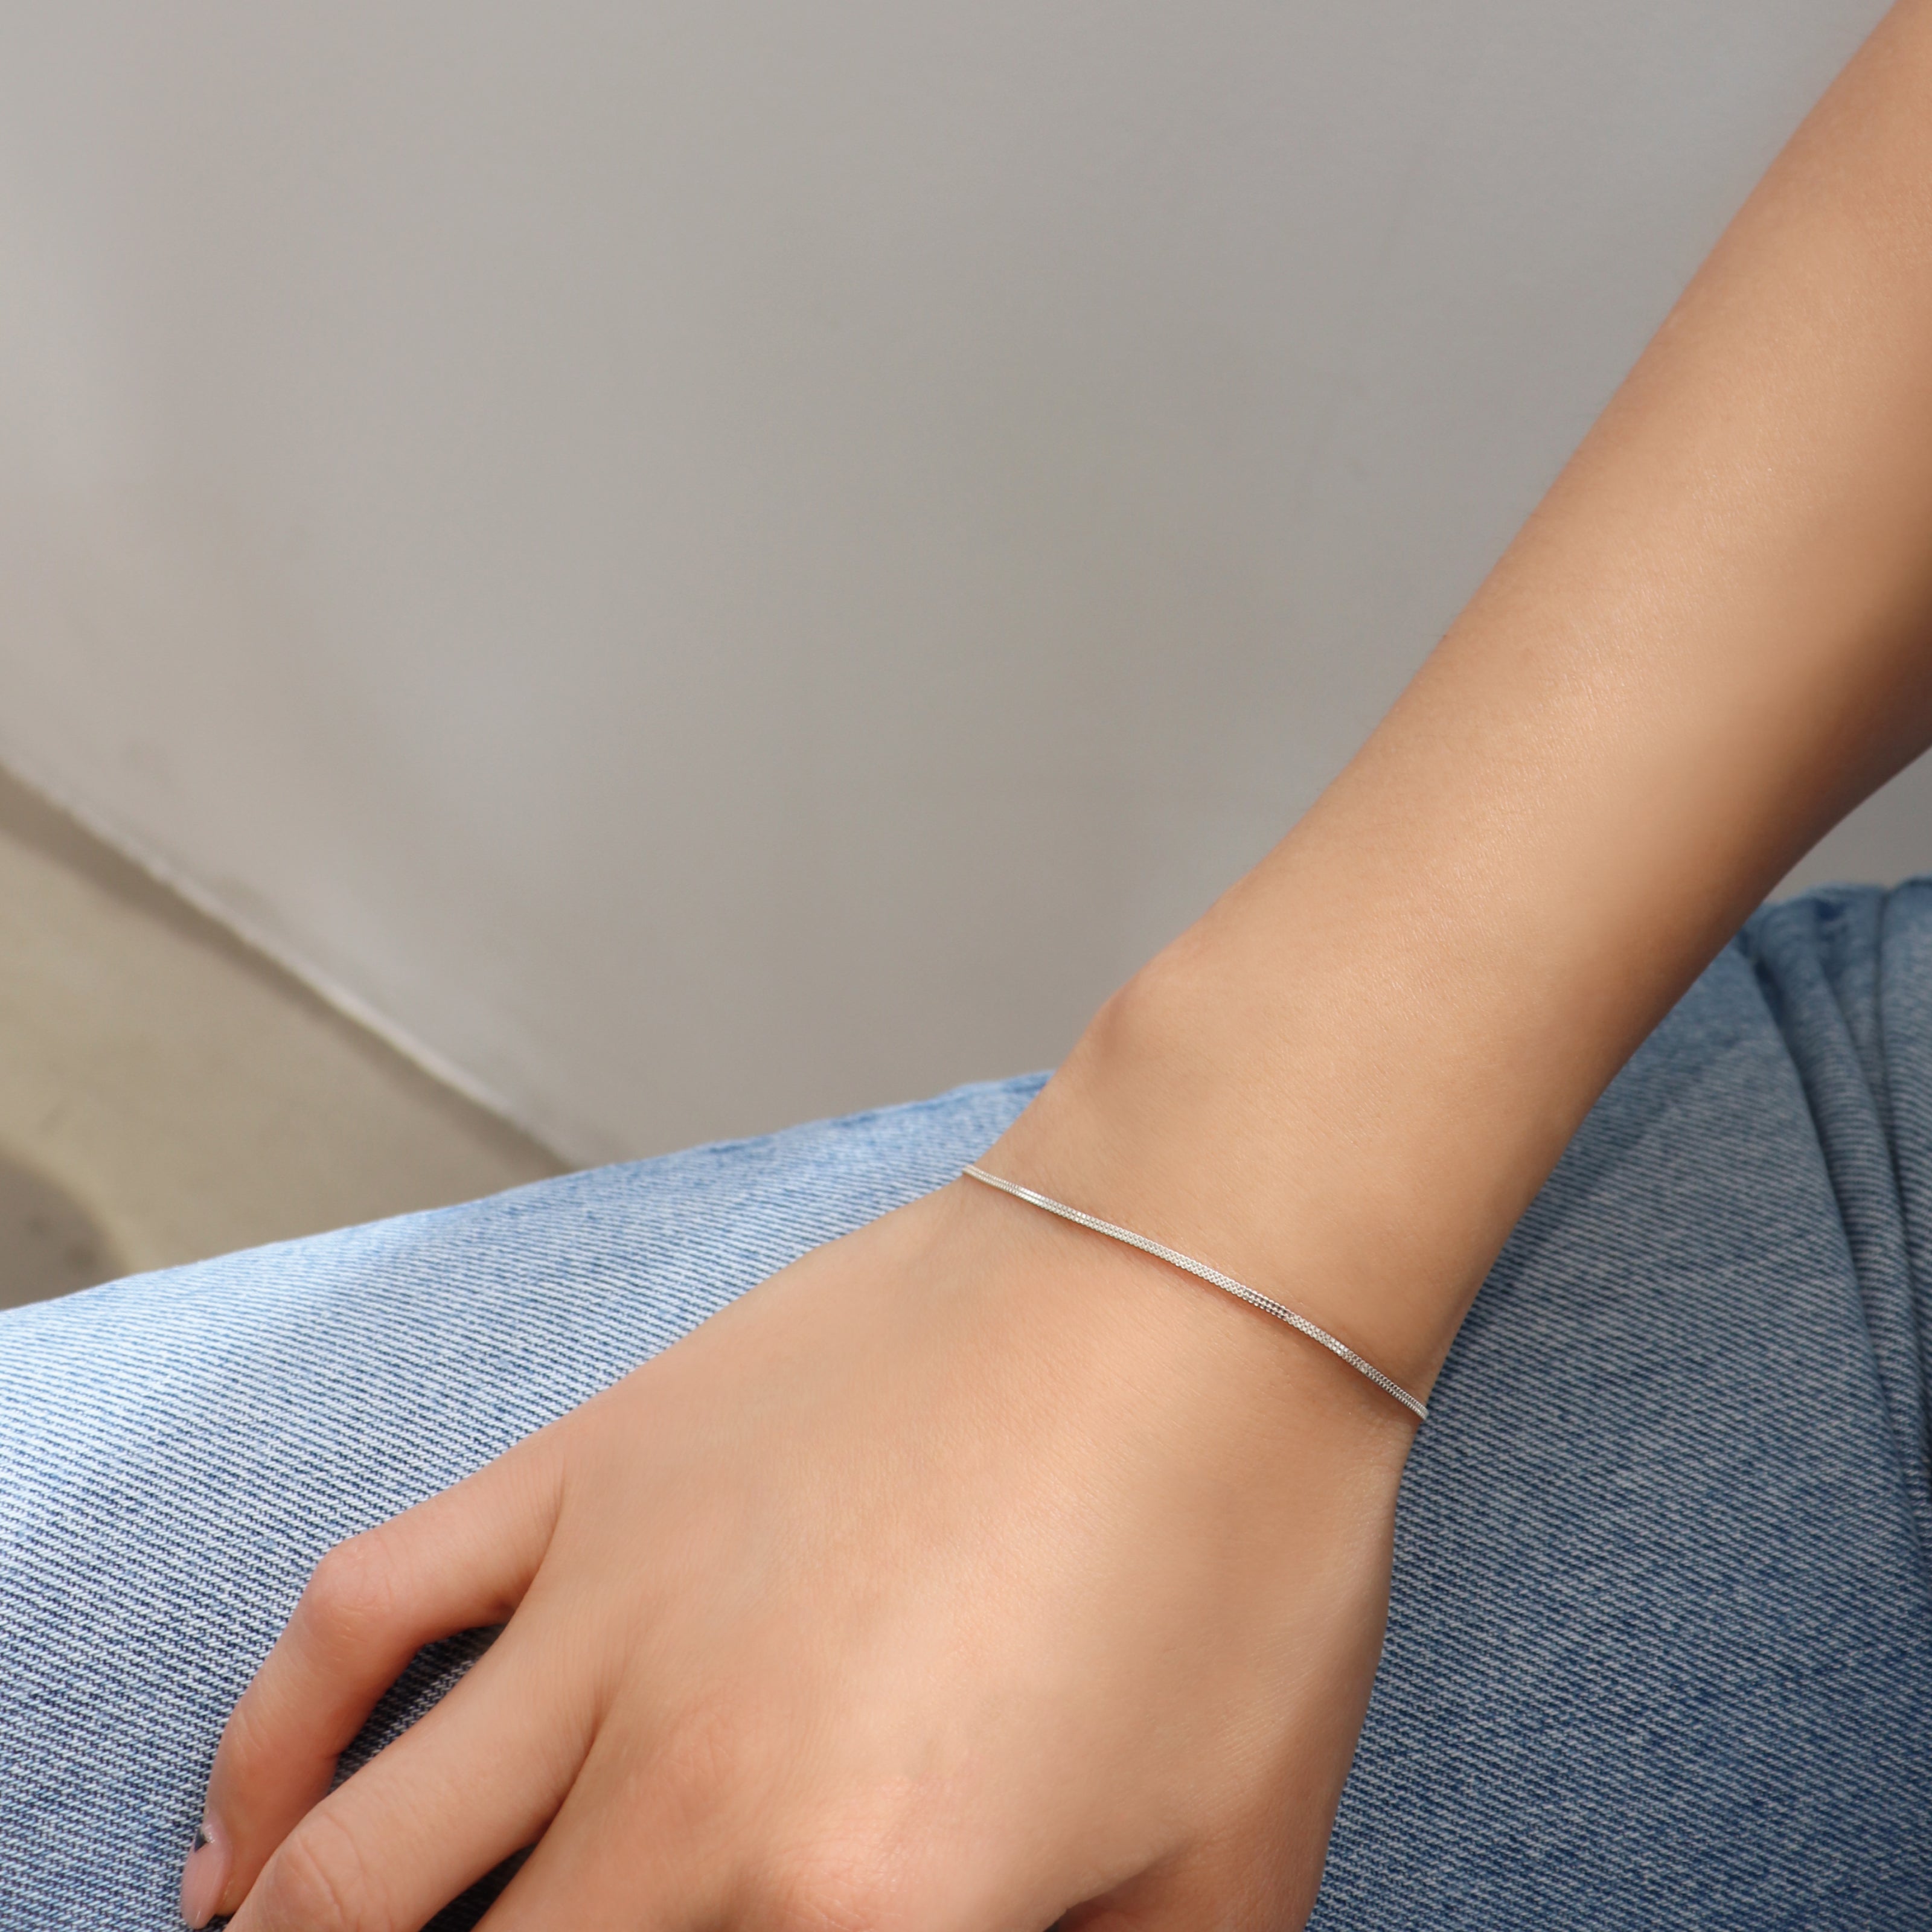 Sterling Silver Double Line Bracelet BlackSugar-Find Your Favorite Jewelry that Kpop Stars Wear